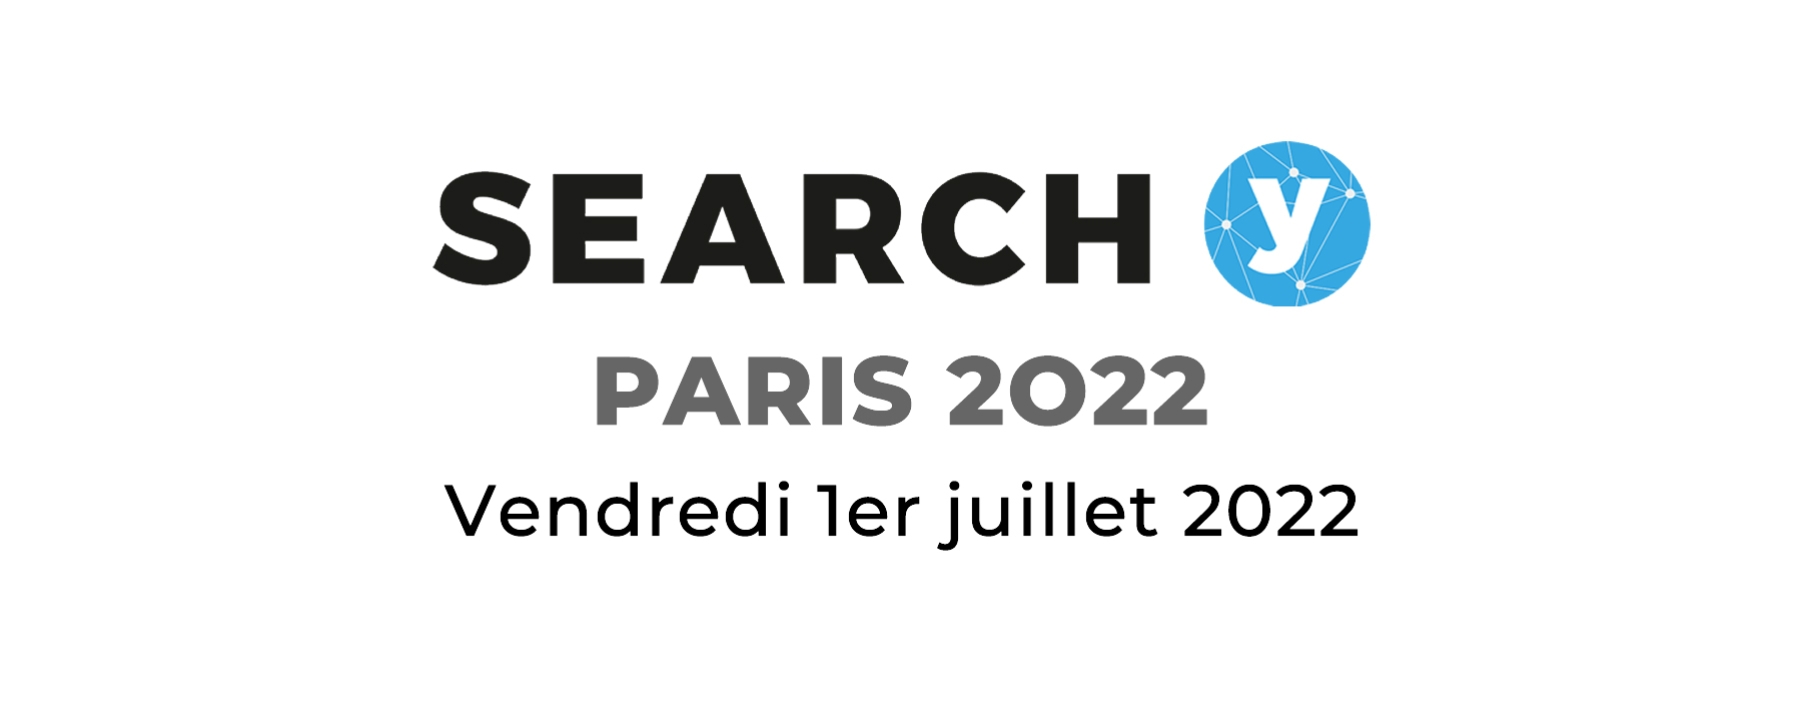 Search Y Paris 2022